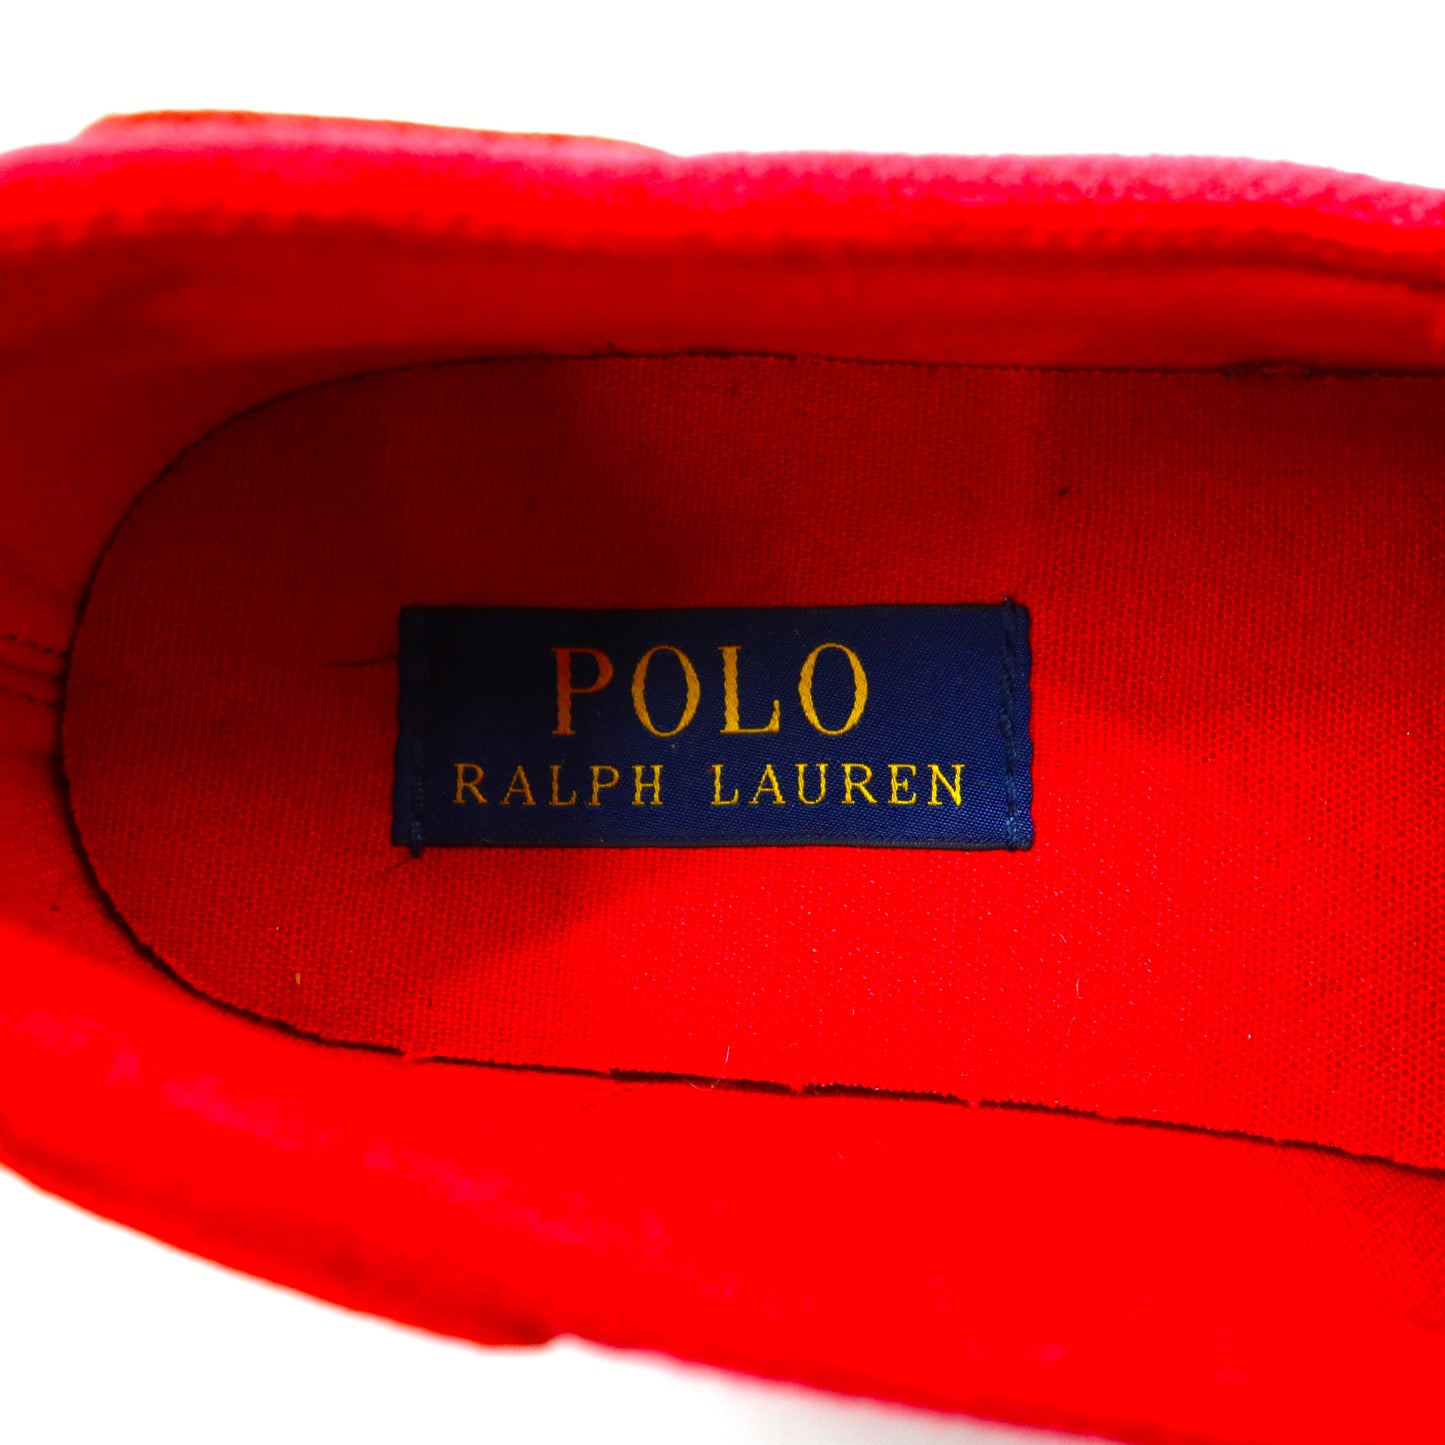 POLO RALPH LAUREN スニーカー デッキシューズ 26.5cm レッド キャンバス Lander P Boat Shoes